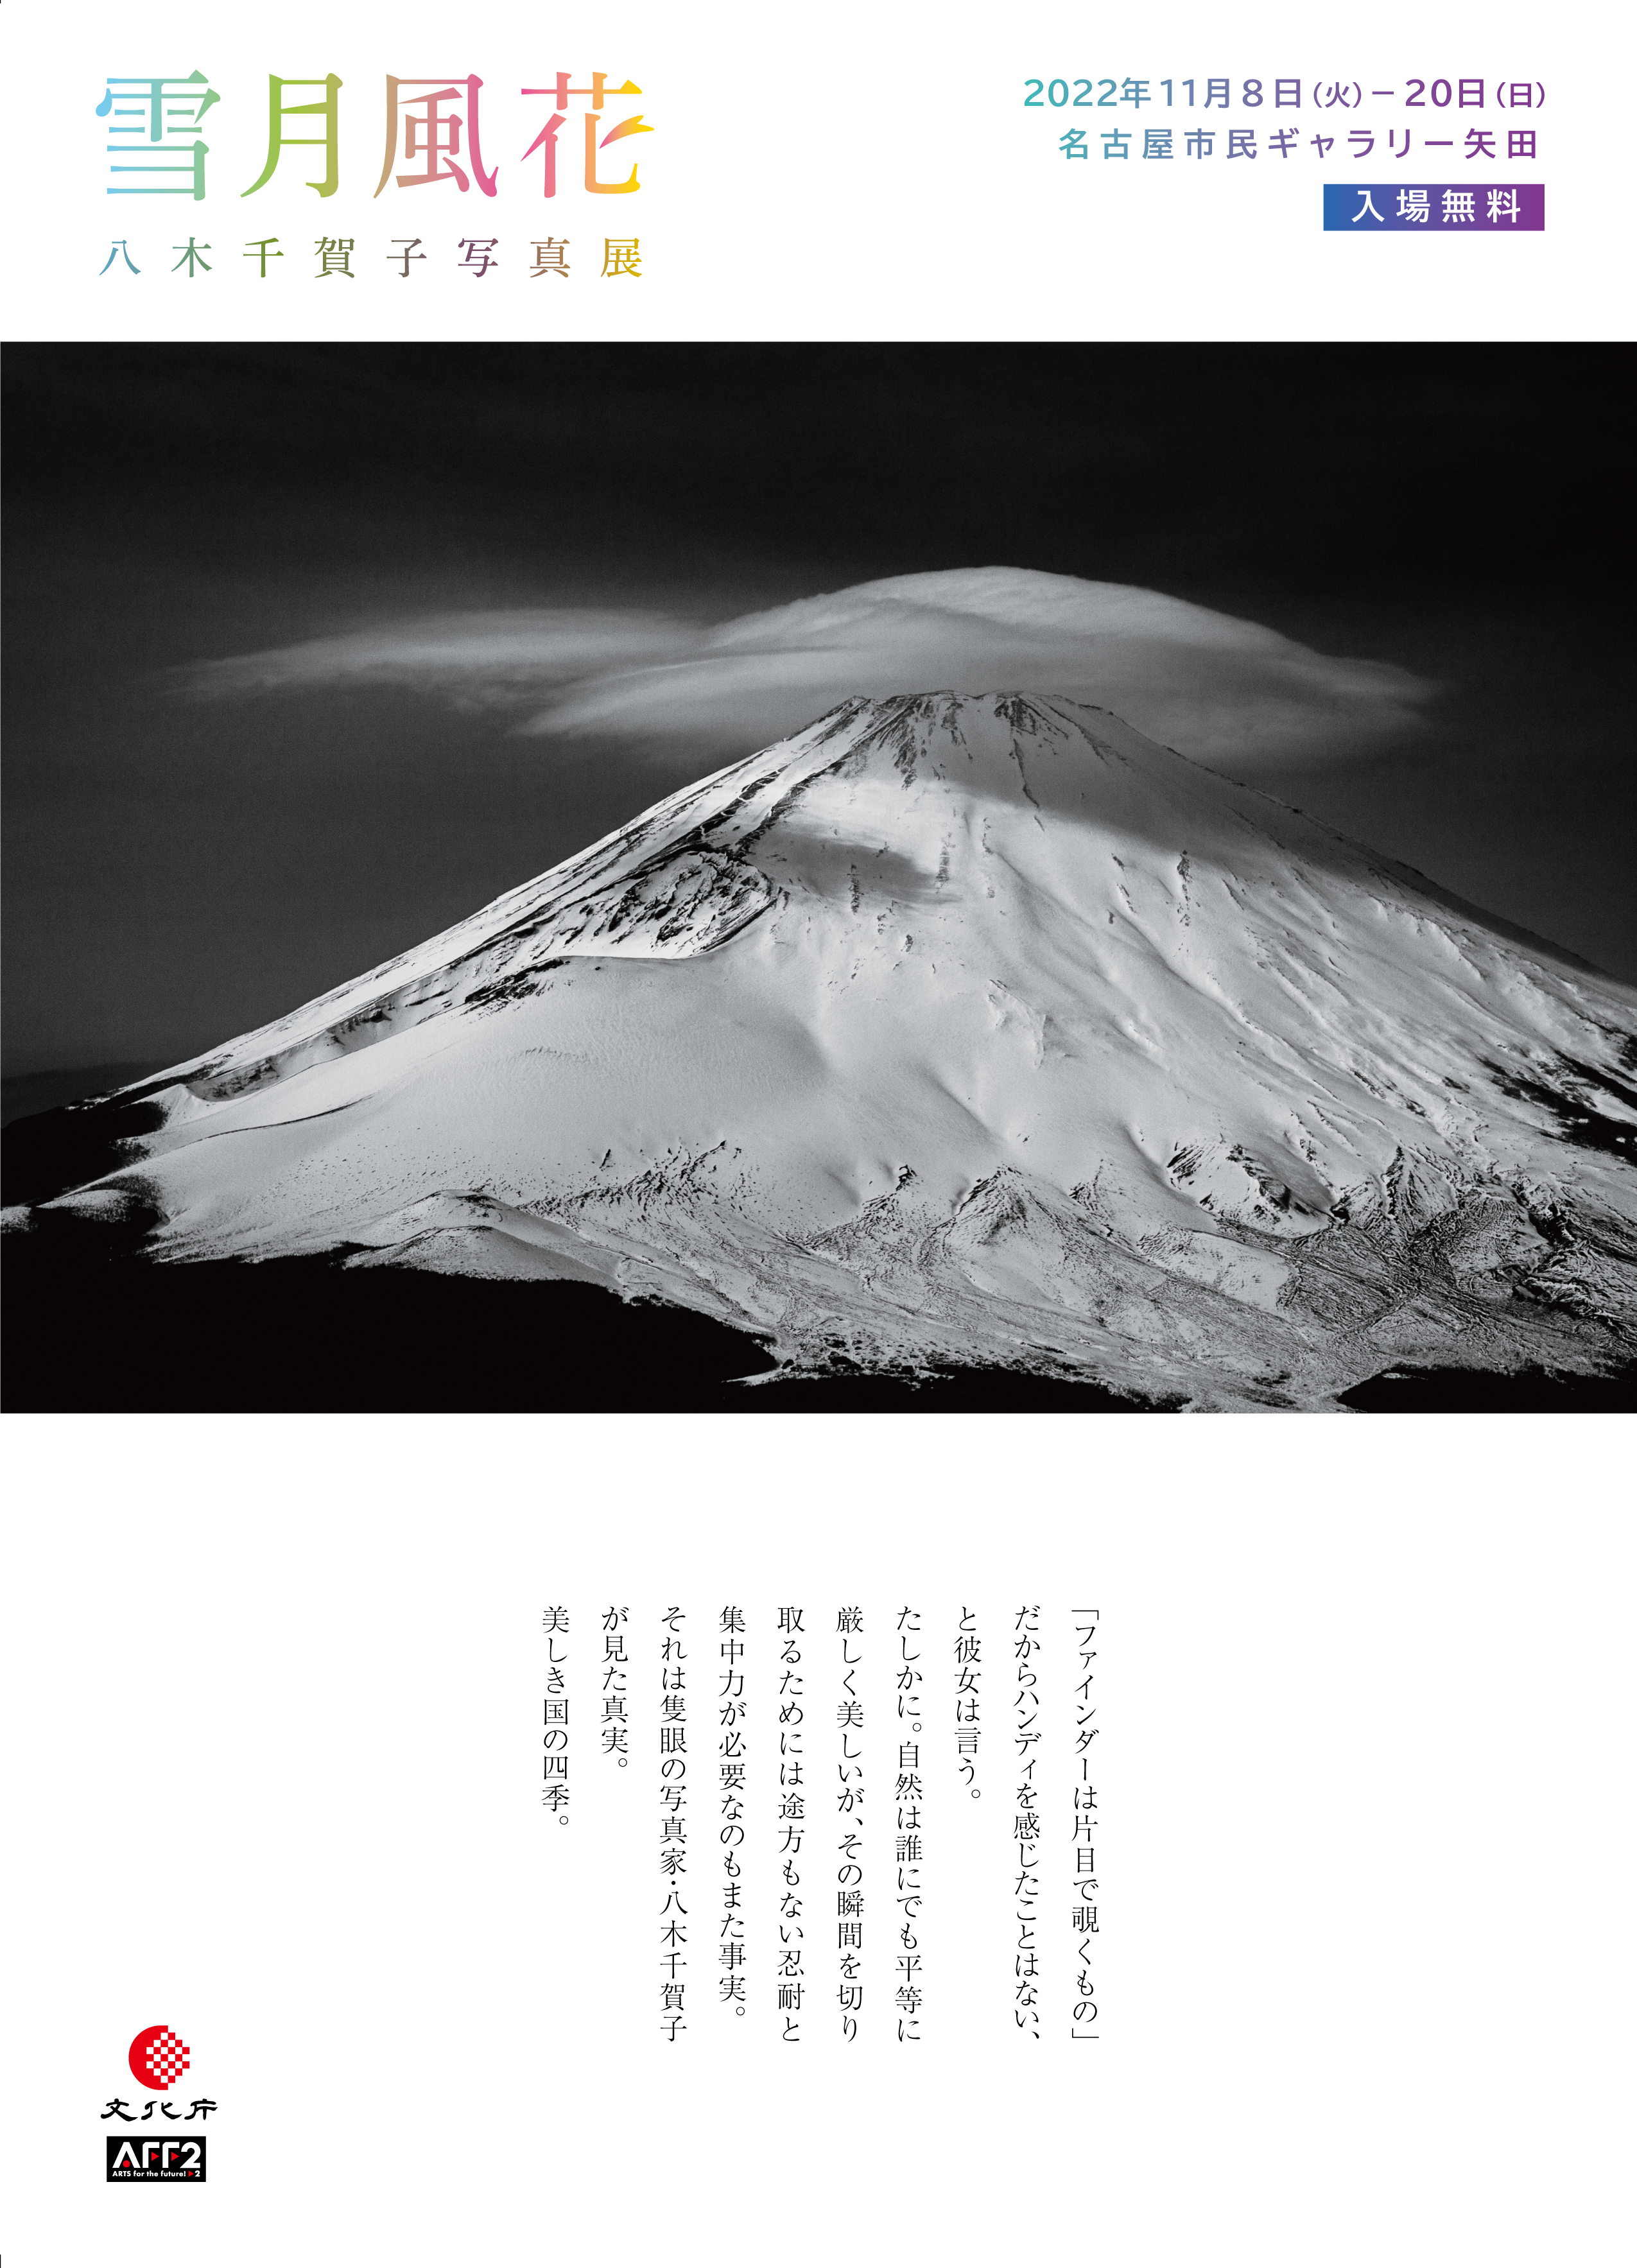 デジタルが切り拓く写真表現の現在#3　八木千賀子写真展「雪月風花」のチラシ